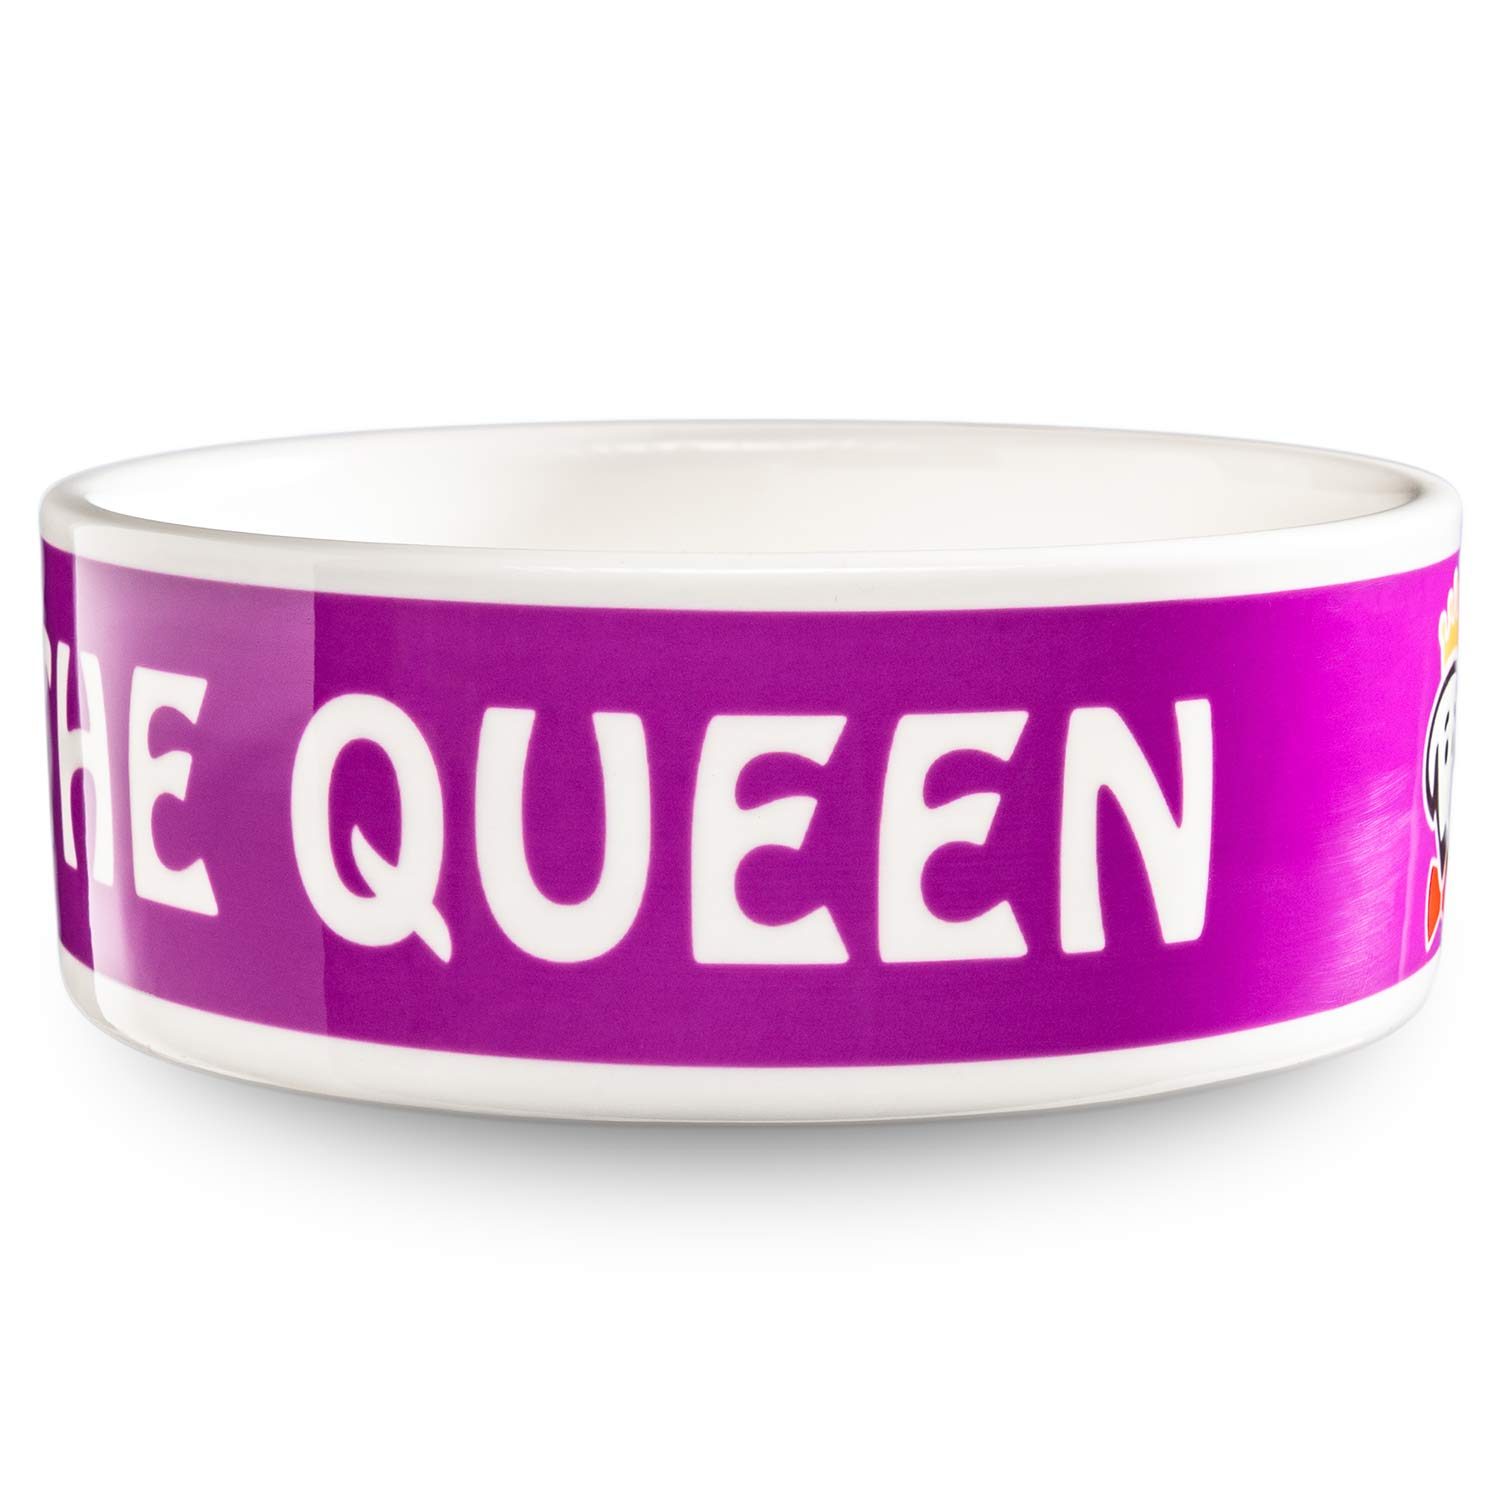 Royal Pet Bowl (Queen) in purple by Beau Tyler